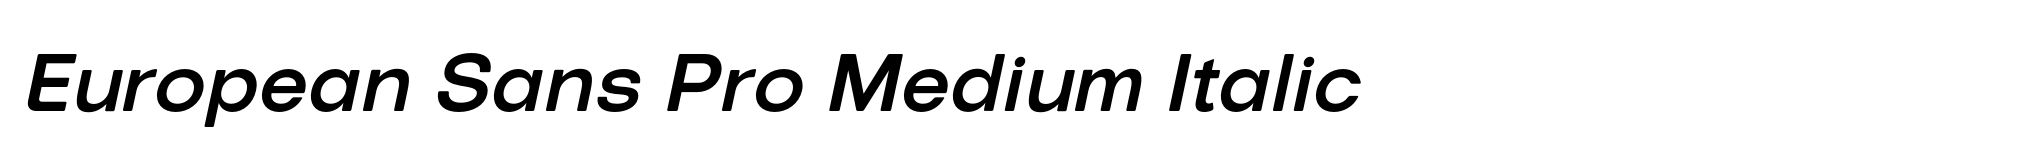 European Sans Pro Medium Italic image